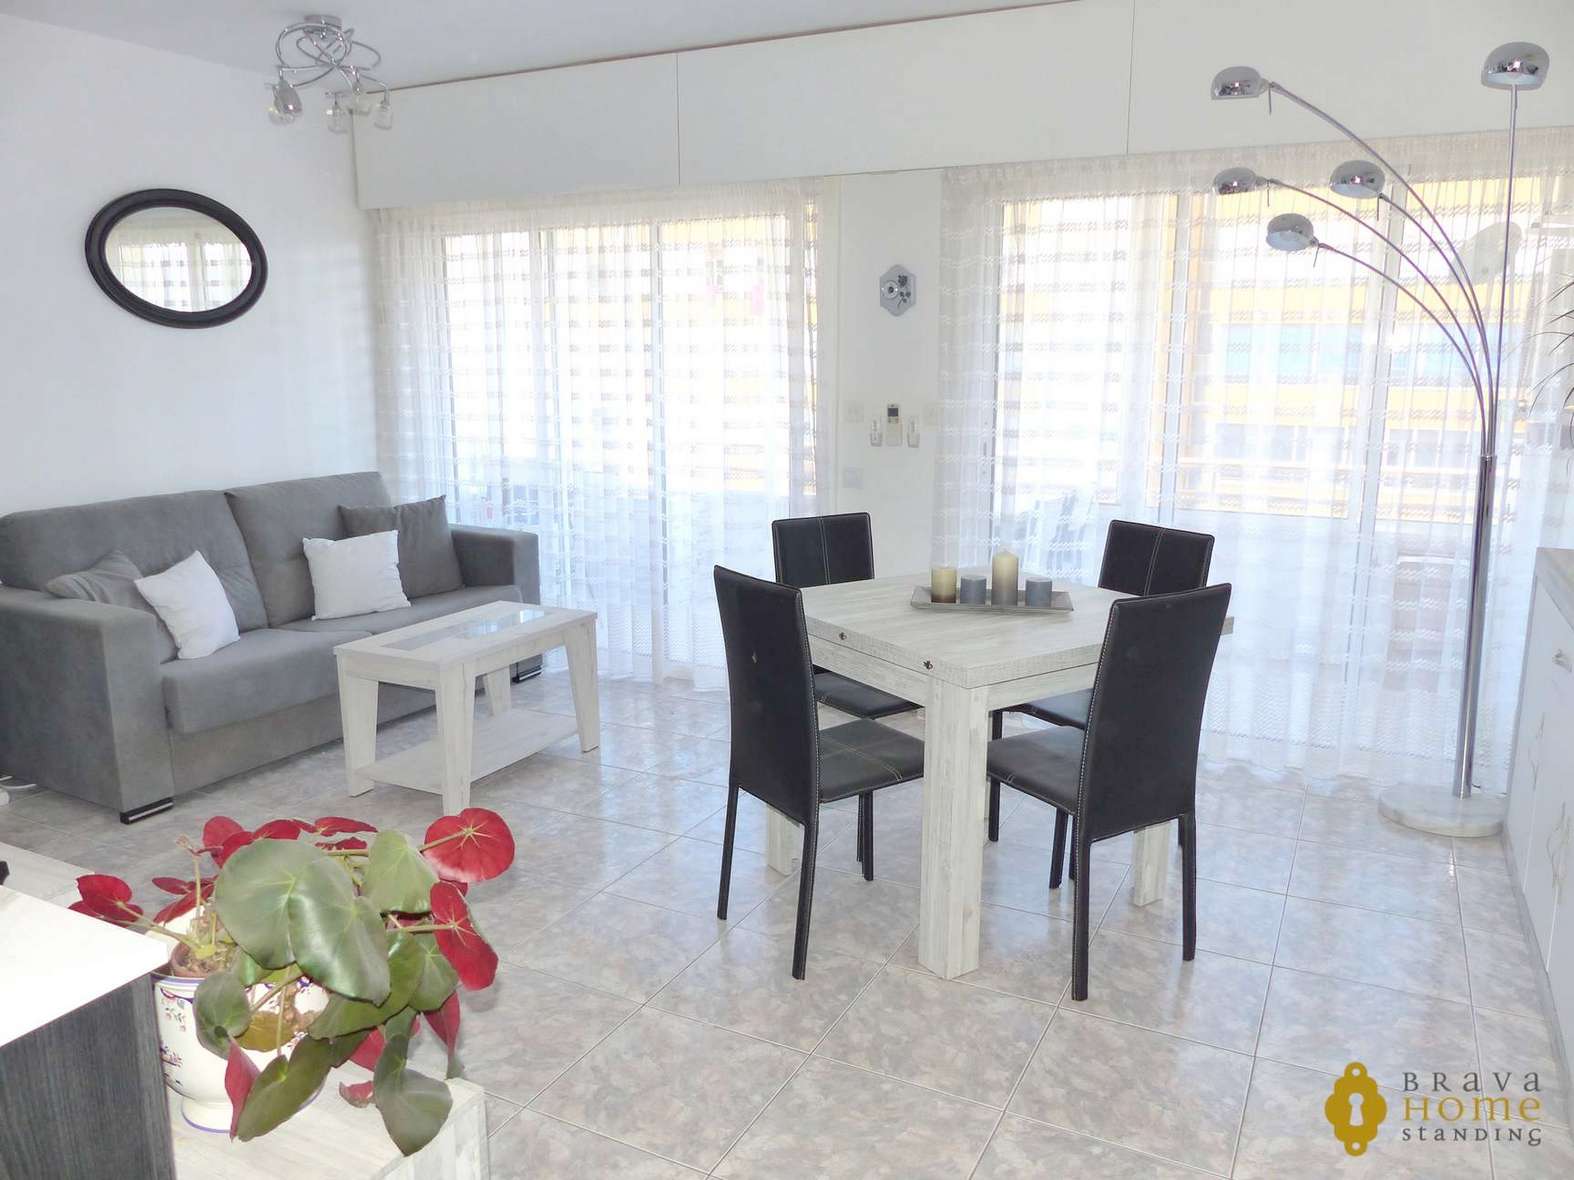 Espléndido apartamento renovado con vista al mar, en venta en Santa Margarita